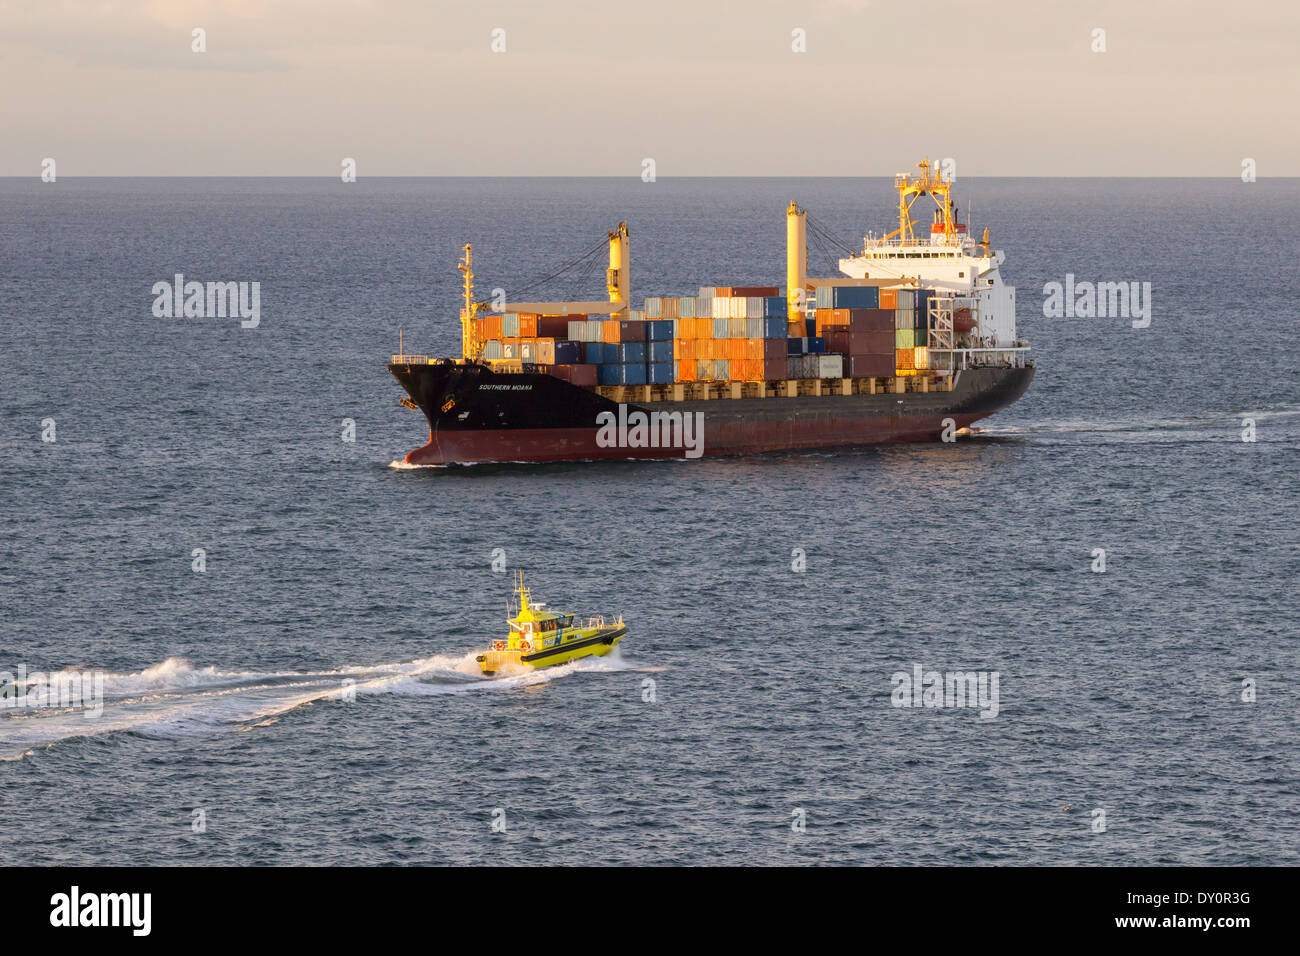 La carga de un buque portacontenedores con barco piloto amarillo acercándose al atardecer Foto de stock